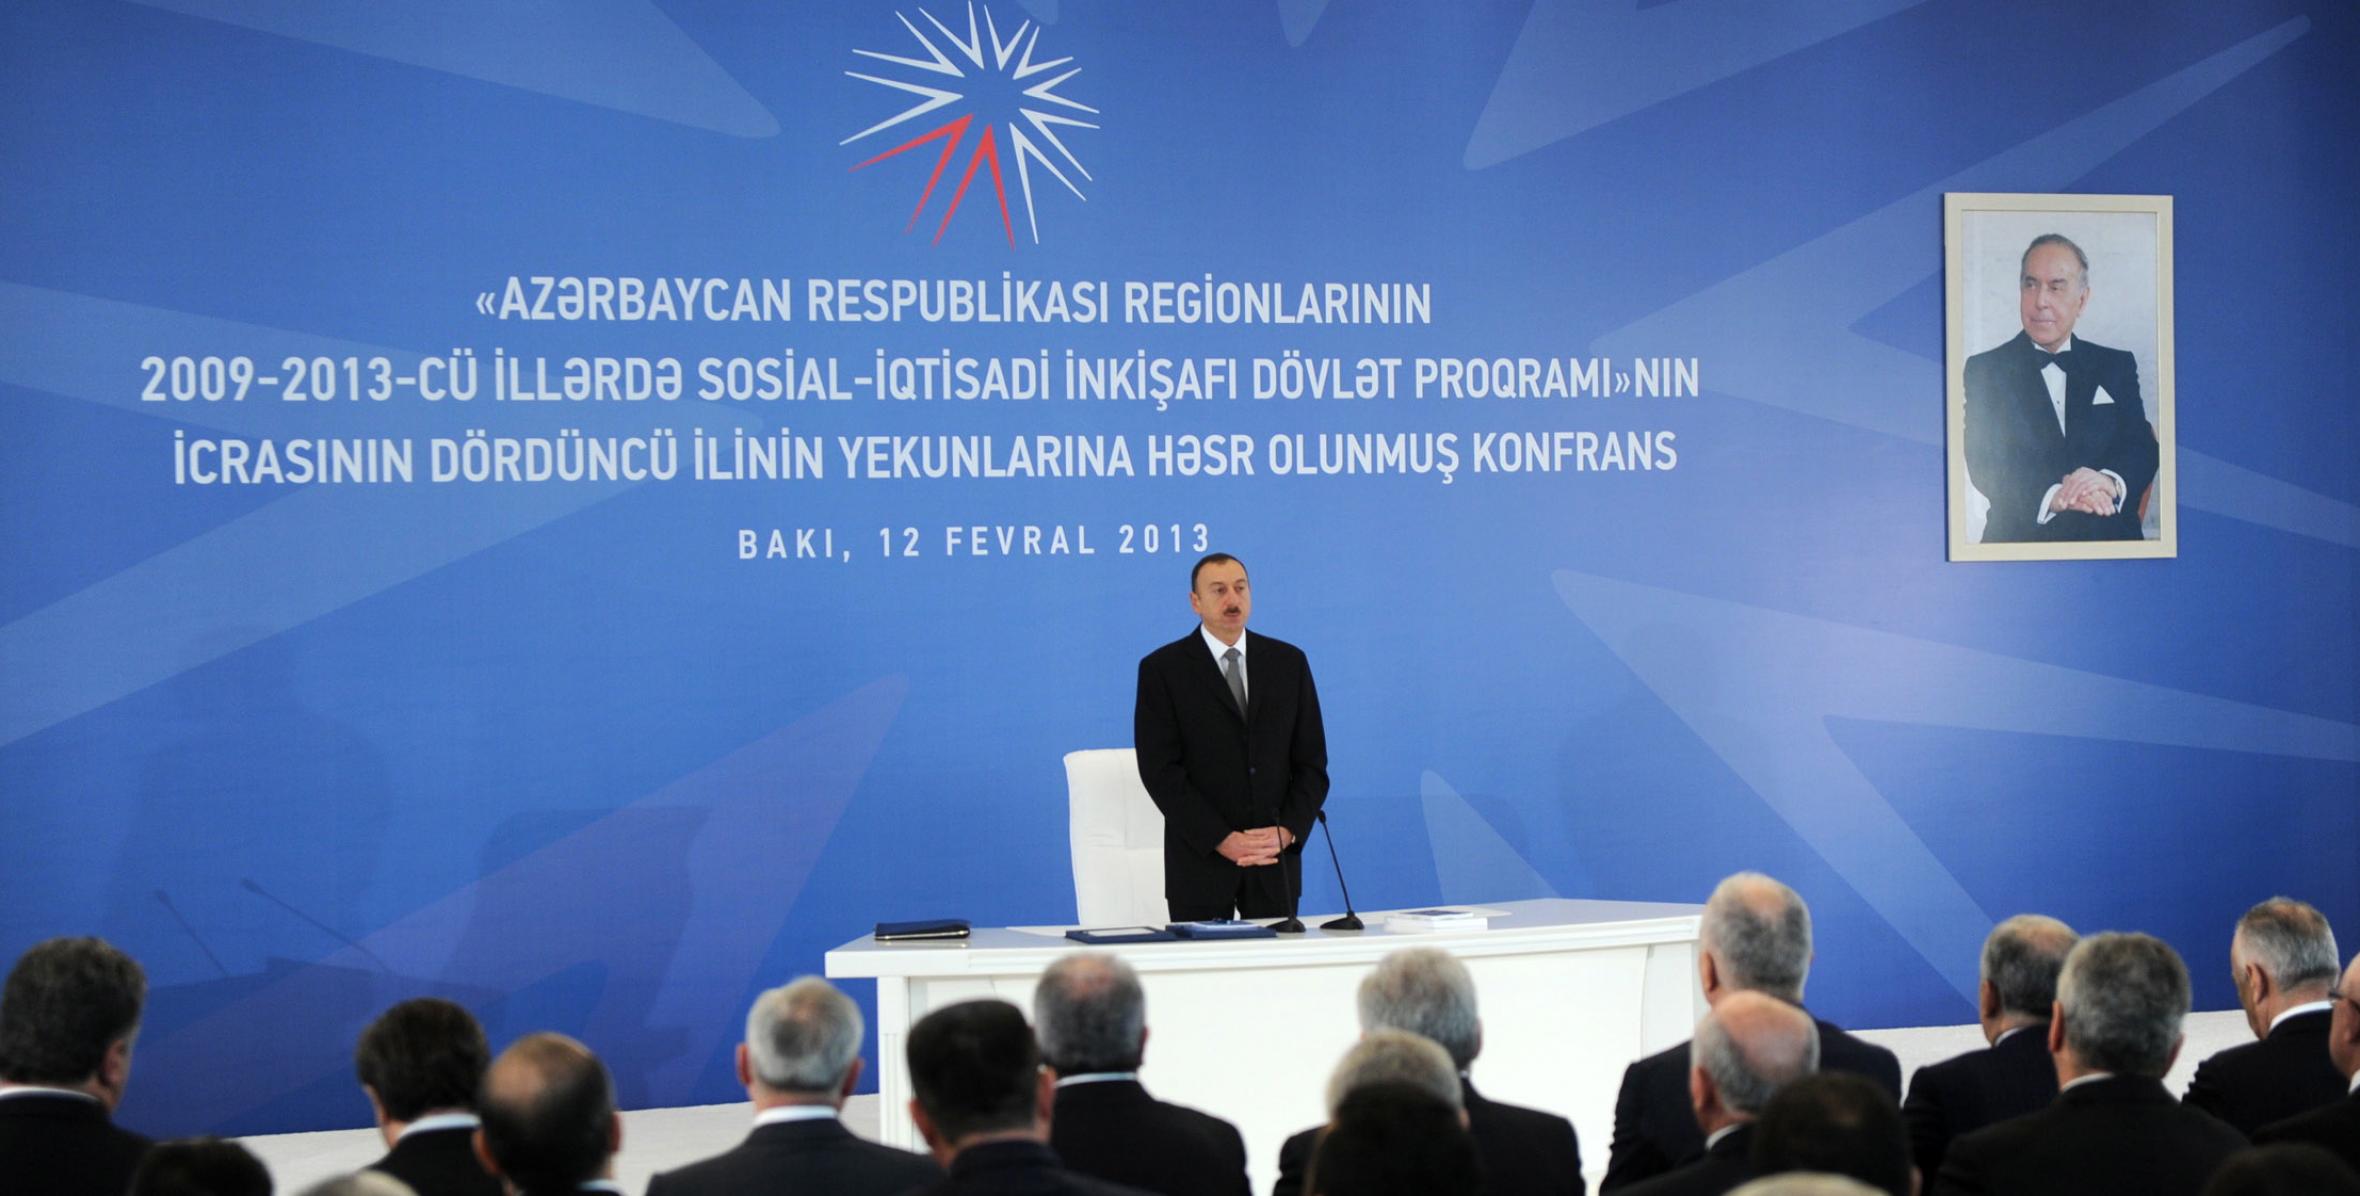 Вступительная речь Ильхама Алиева на конференции, посвященной итогам четвертого года исполнения «Государственной программы социально-экономического развития регионов Азербайджанской Республики в 2009-2013 годах»